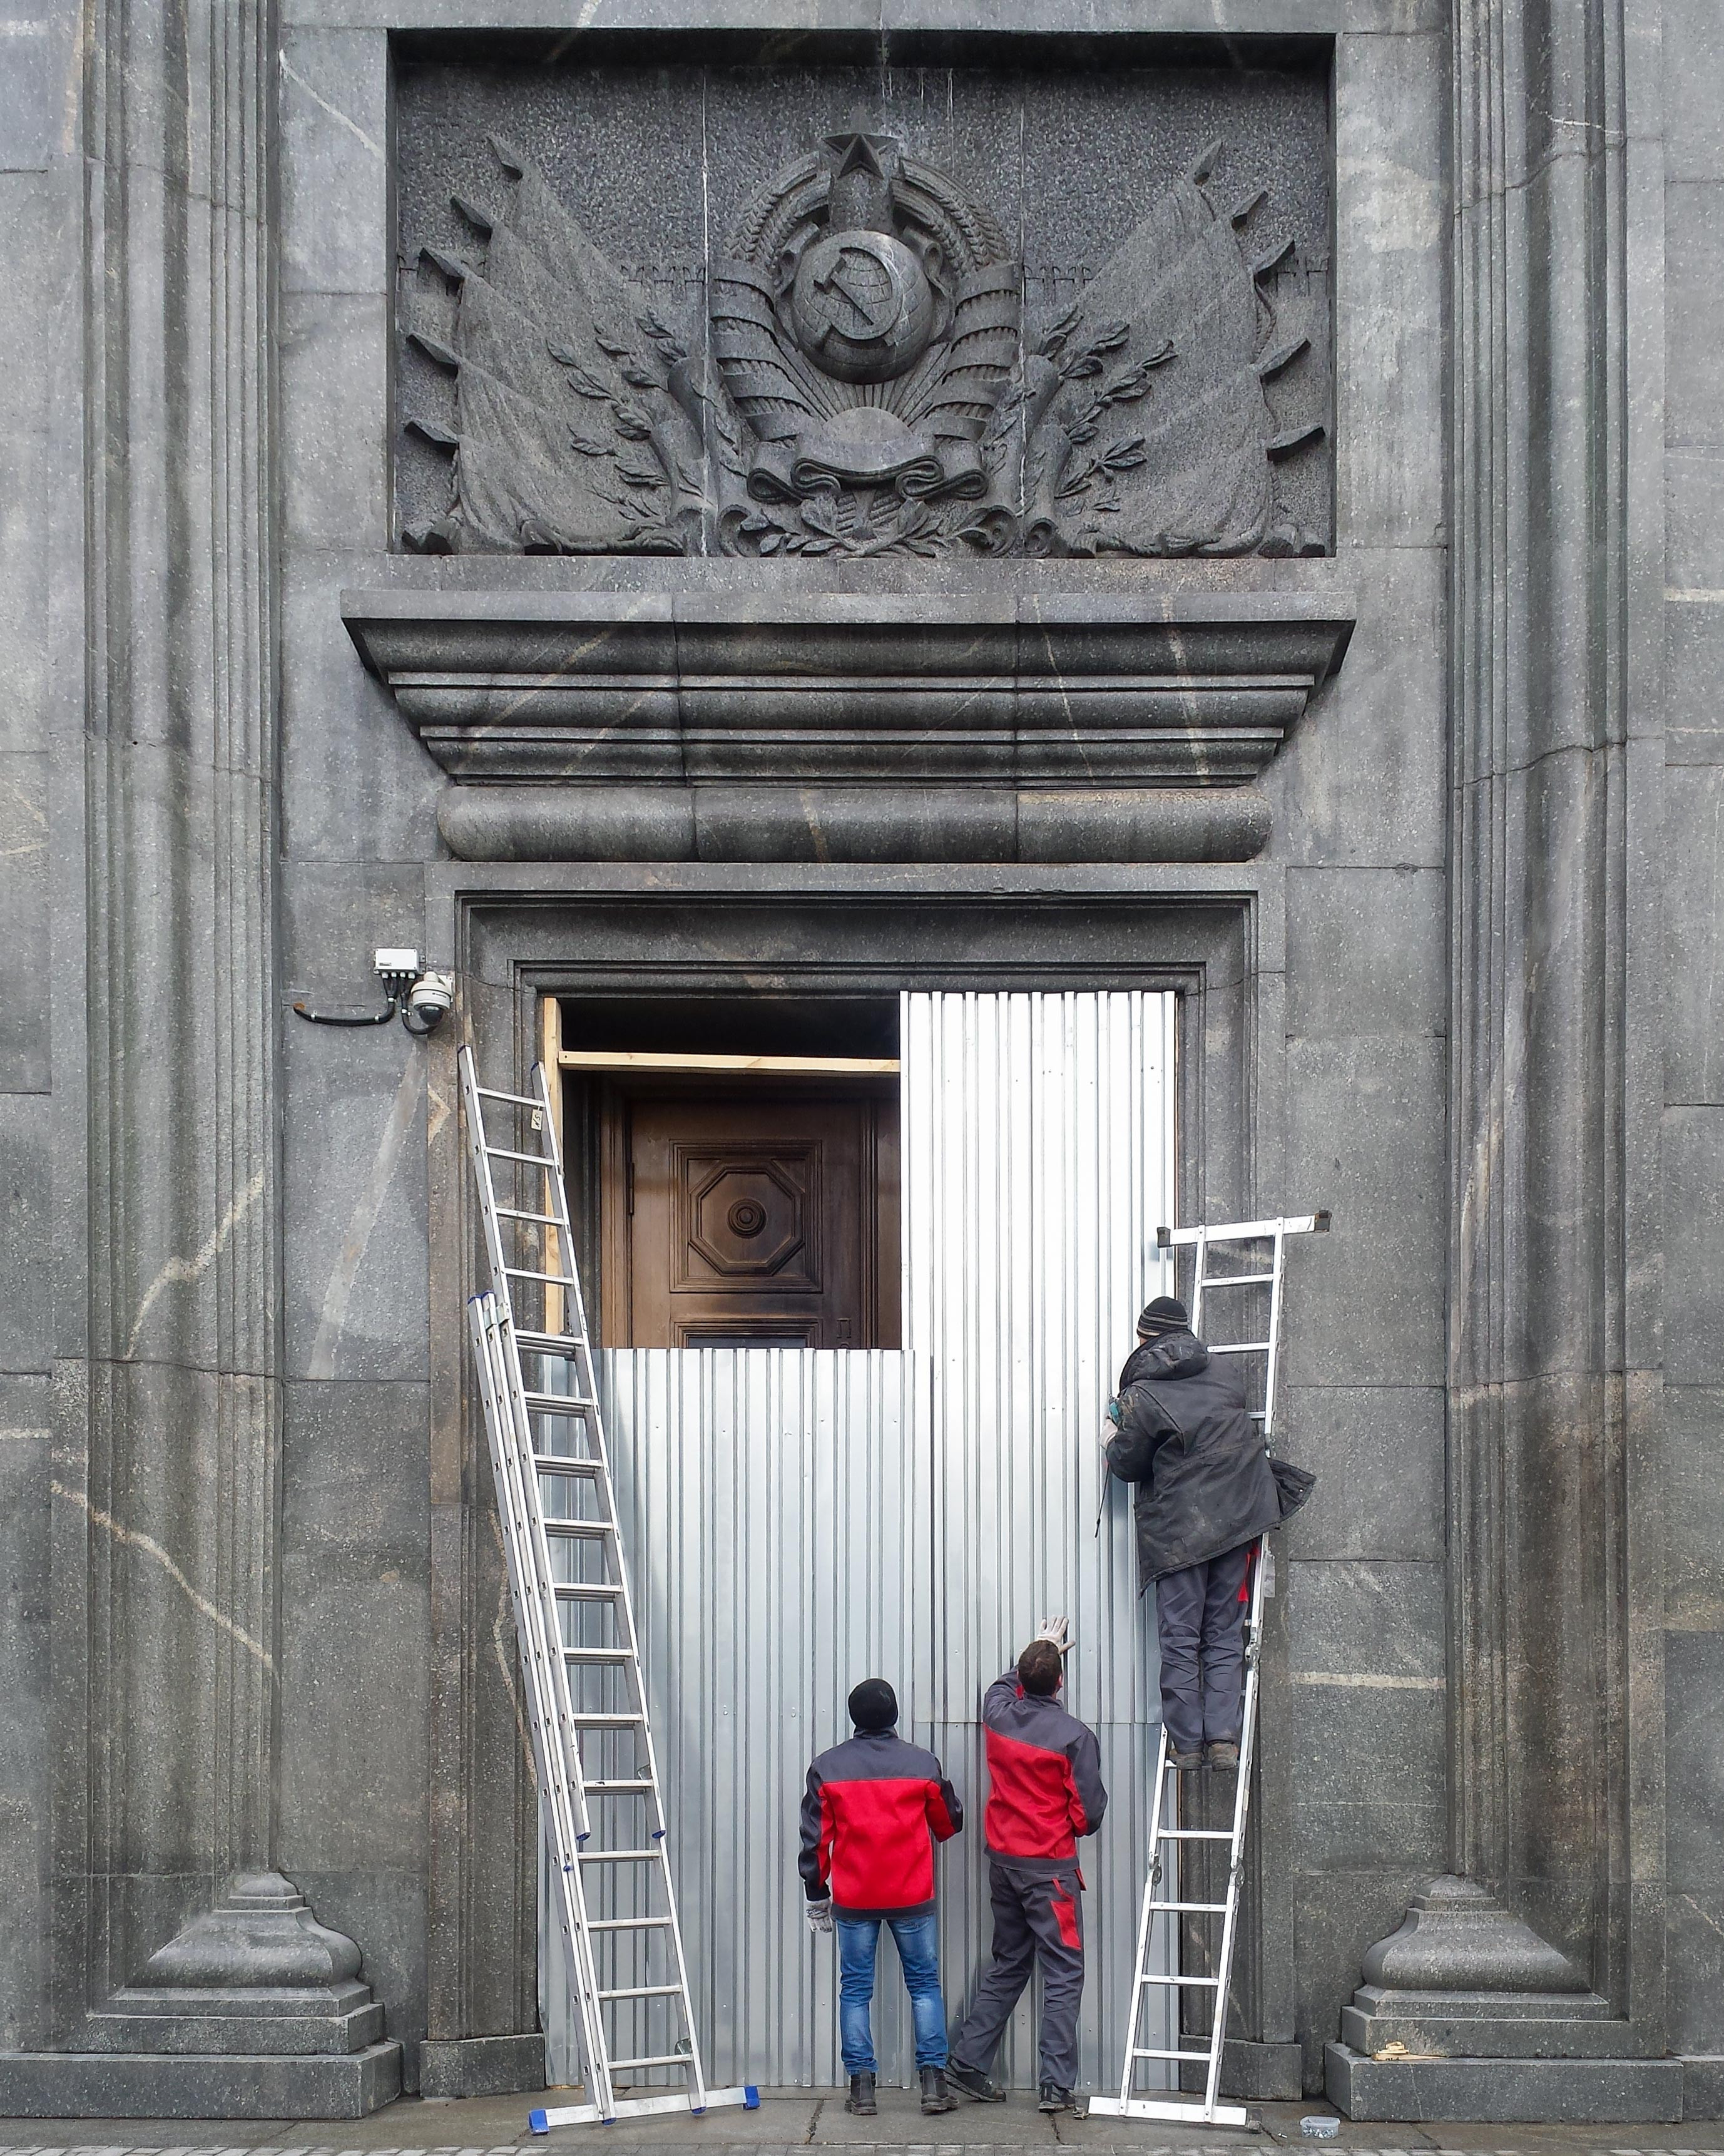 Двери главного здания ФСБ 10 ноября 2015&nbsp;года, фотография: Иван Ерофеев, http://ivanerofeev.photography/